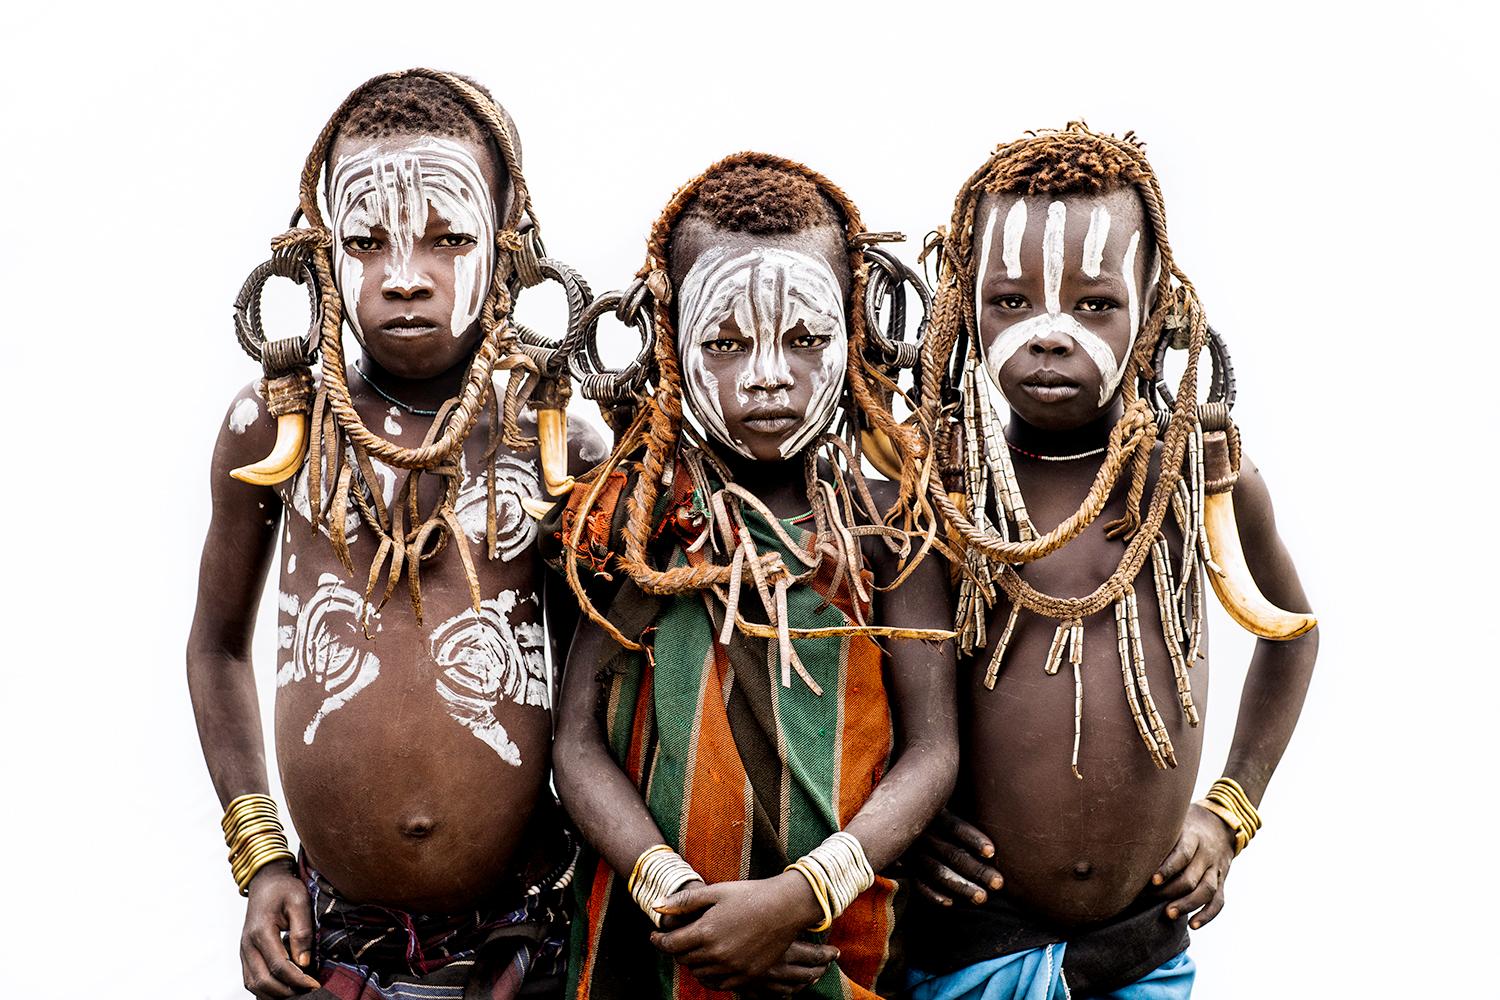 "3 Mursi Boys A" Photographie 26.5" x 40" inch Edition 2/7 par Safaa Kagan

Vallée de l'Omo, Éthiopie

À PROPOS DE 

Safaa est une photographe basée à Los Angeles dont la mission est de dissoudre les barrières superficielles de l'humanité. Née à